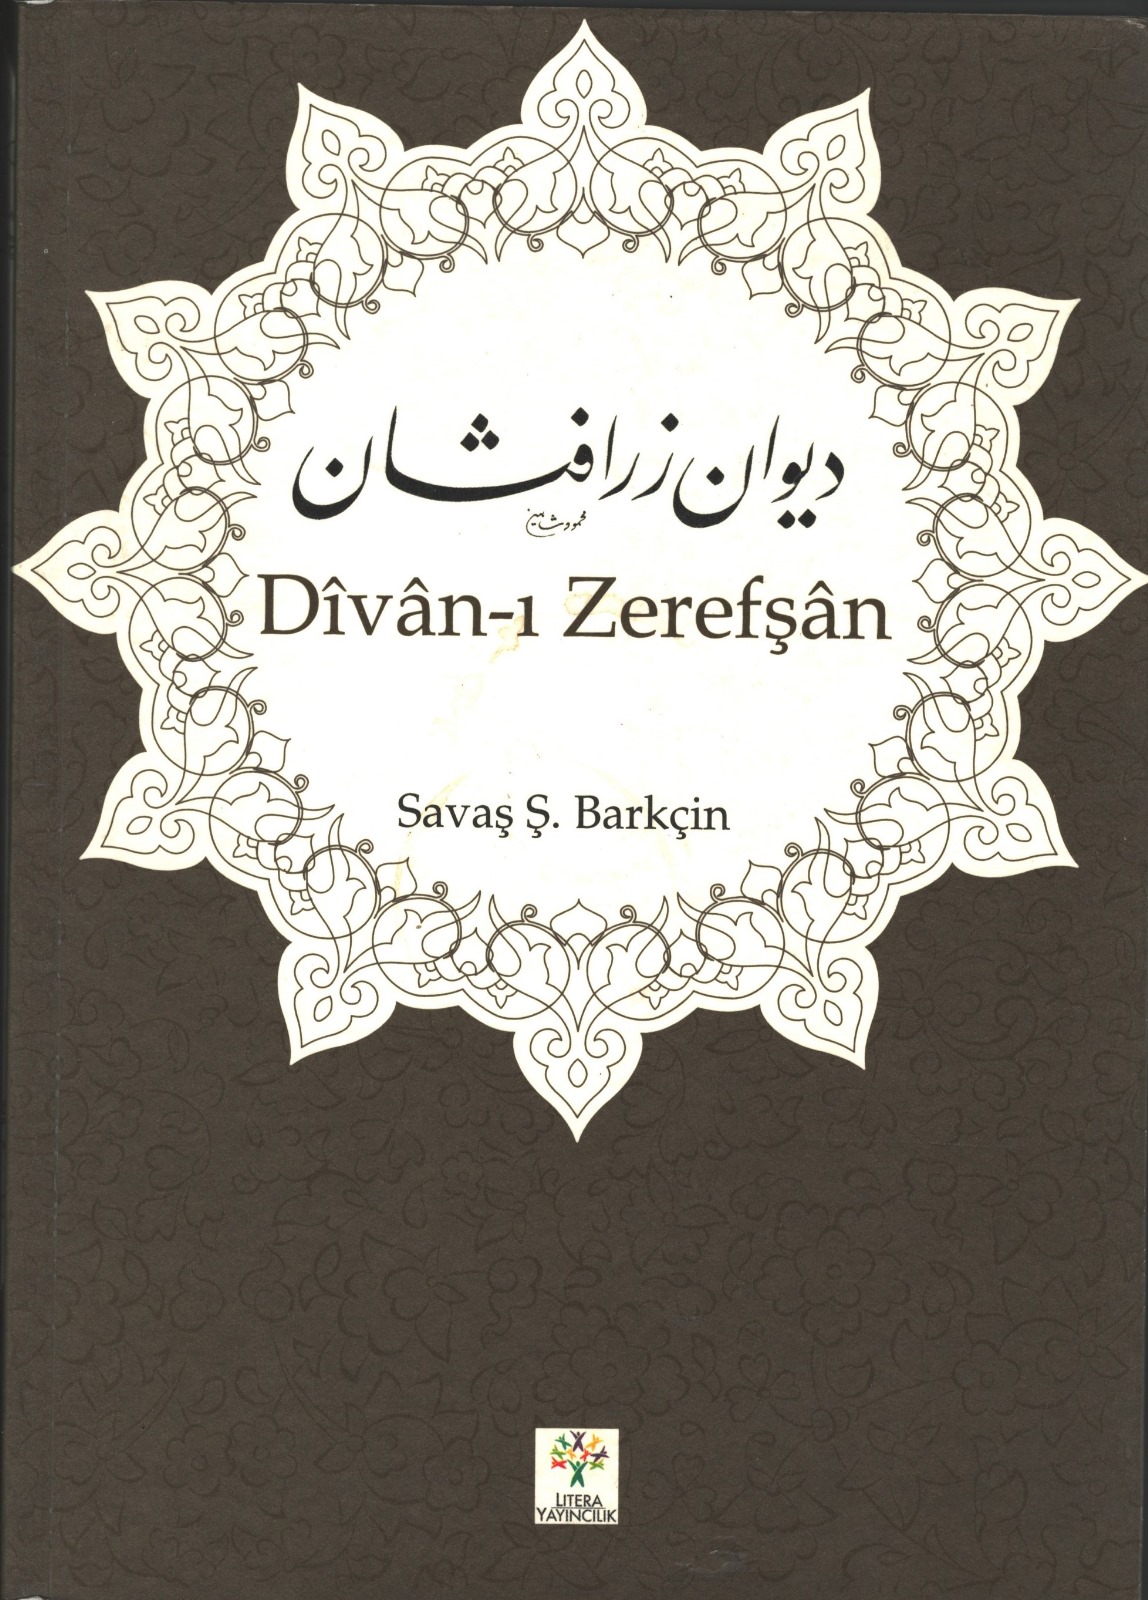 Divan I Zerefşan, Litera Yayıncılık, İstanbul 2013